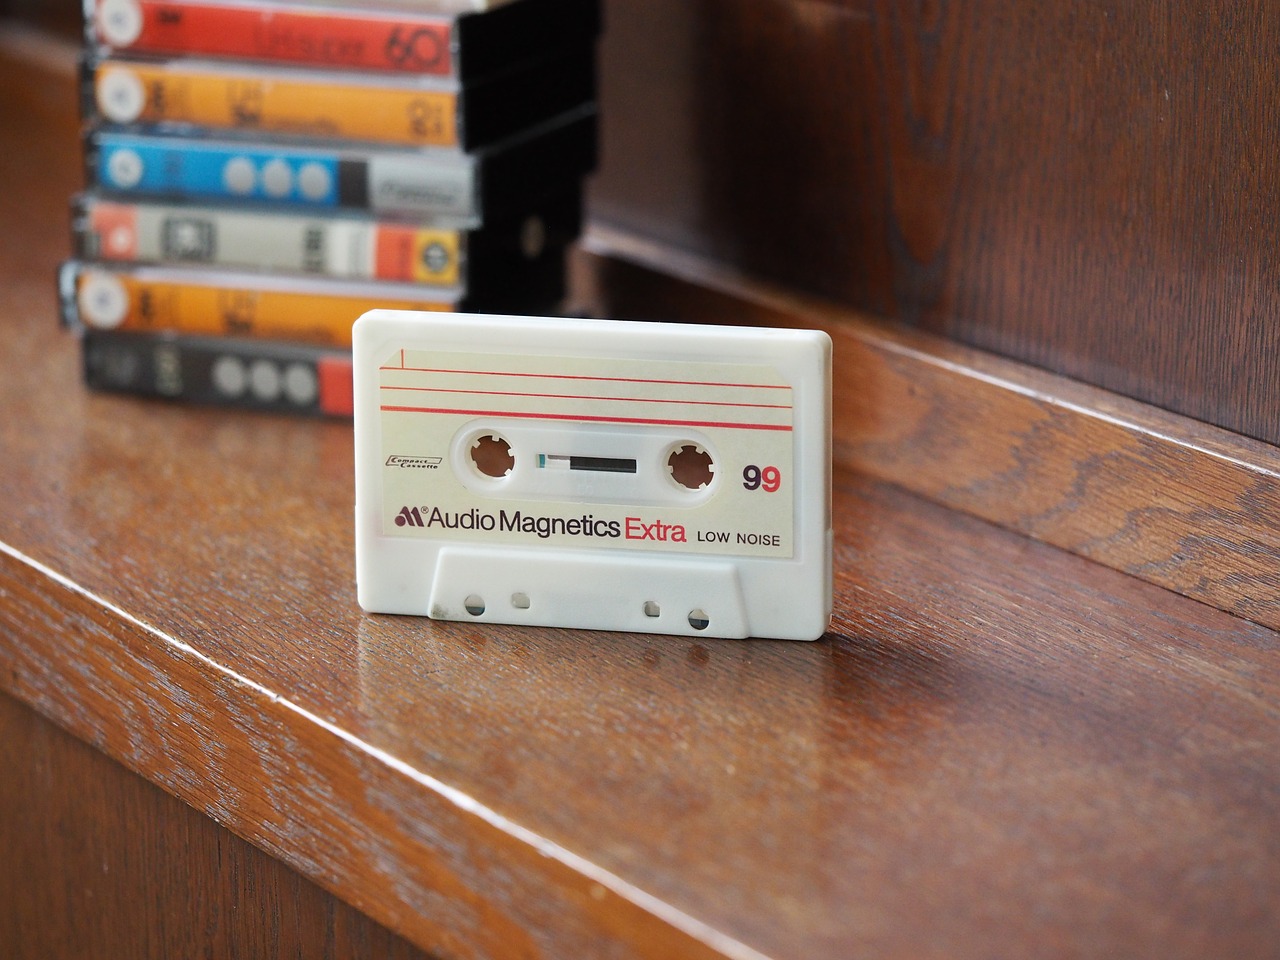 casette compact casette cassette free photo